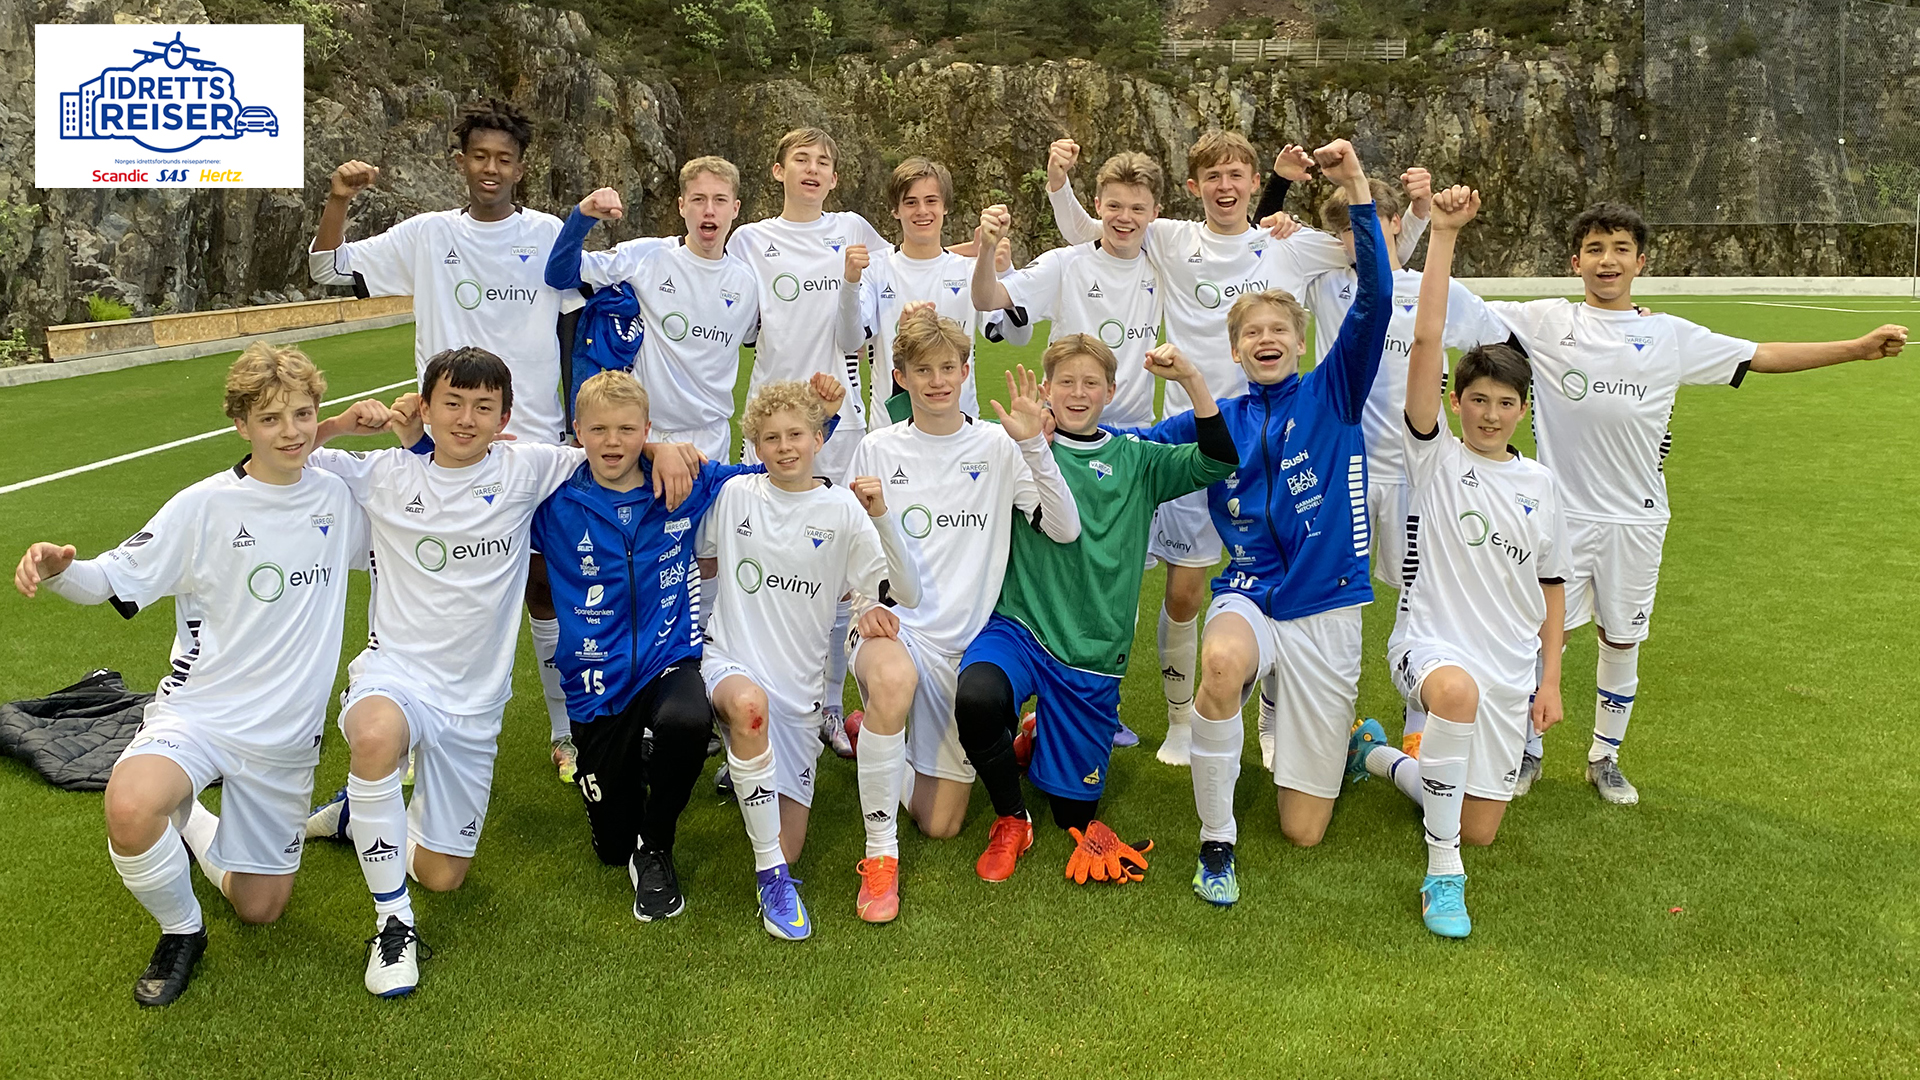 Vareggs fotballgutter gleder seg over å vinne idrettsreise-konkurransen. Foto: Astrid M. Strømsnes